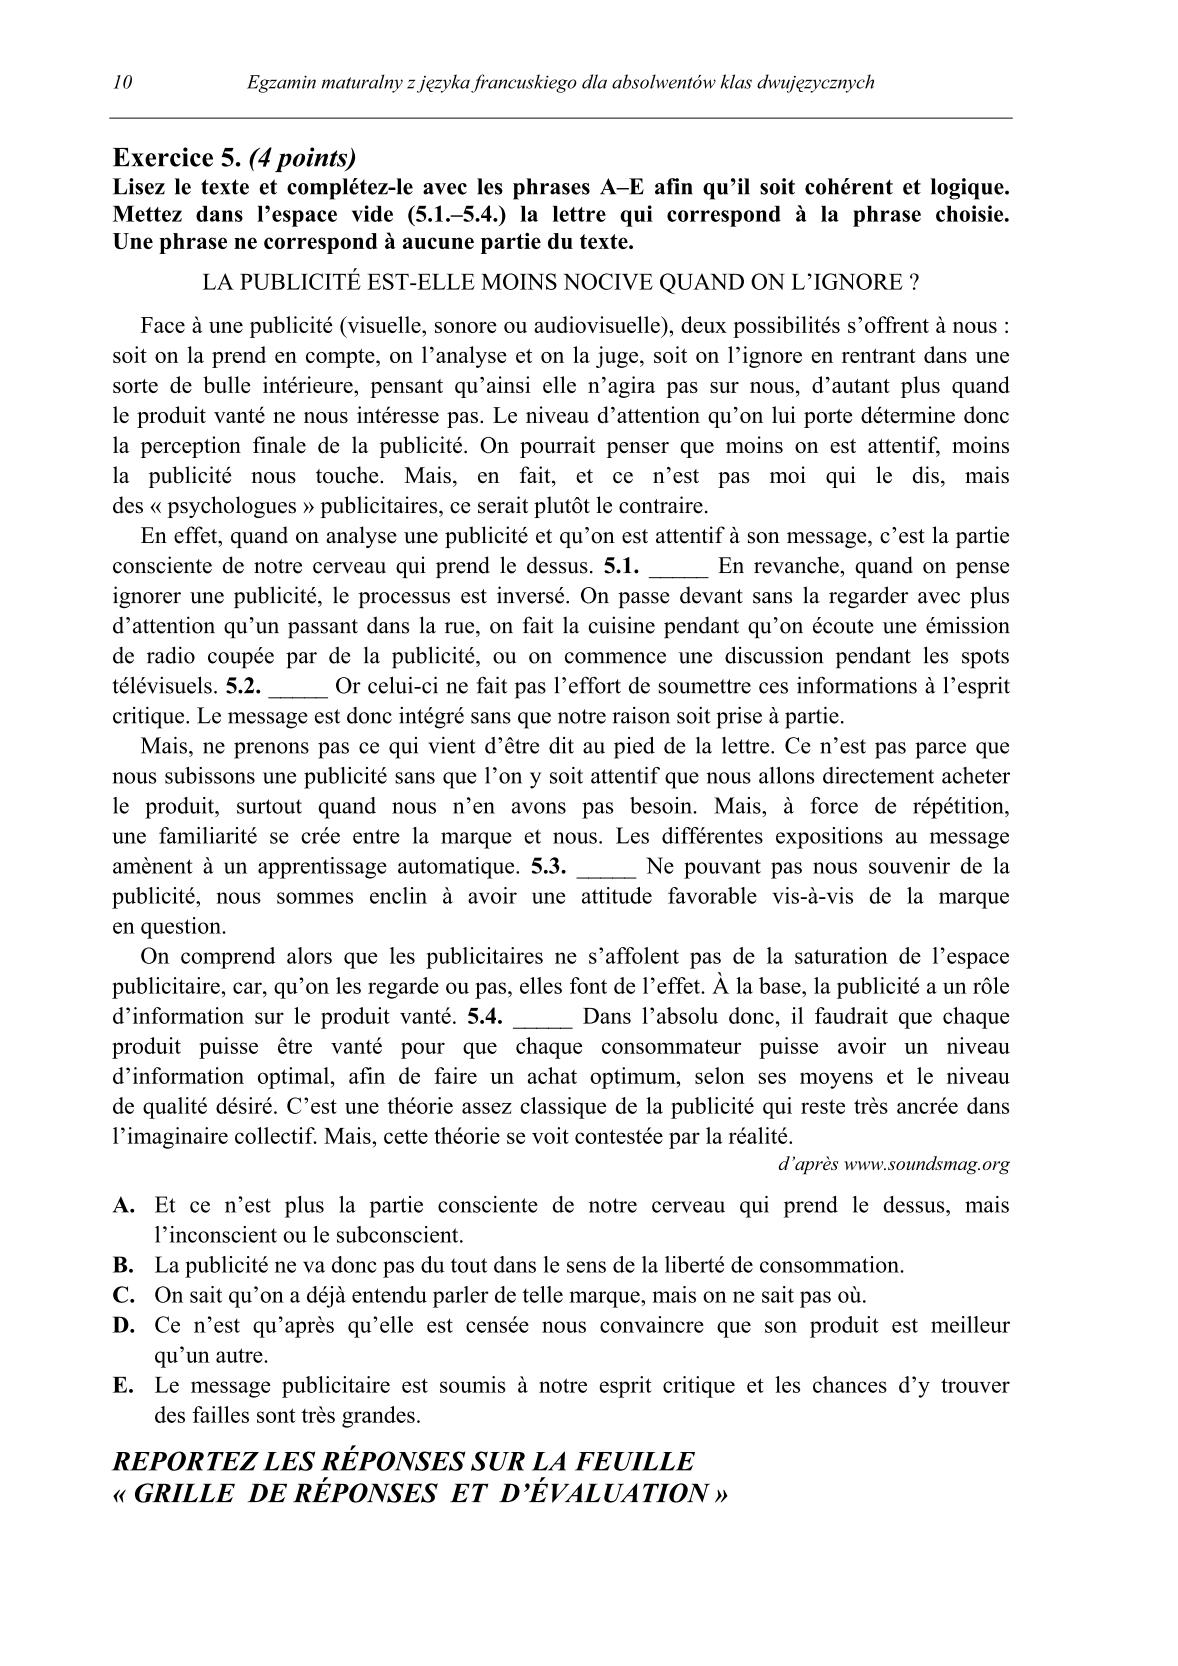 pytania-jezyk-francuski-dla-absolwentow-klas-dwujezycznych-matura-2014-str.10